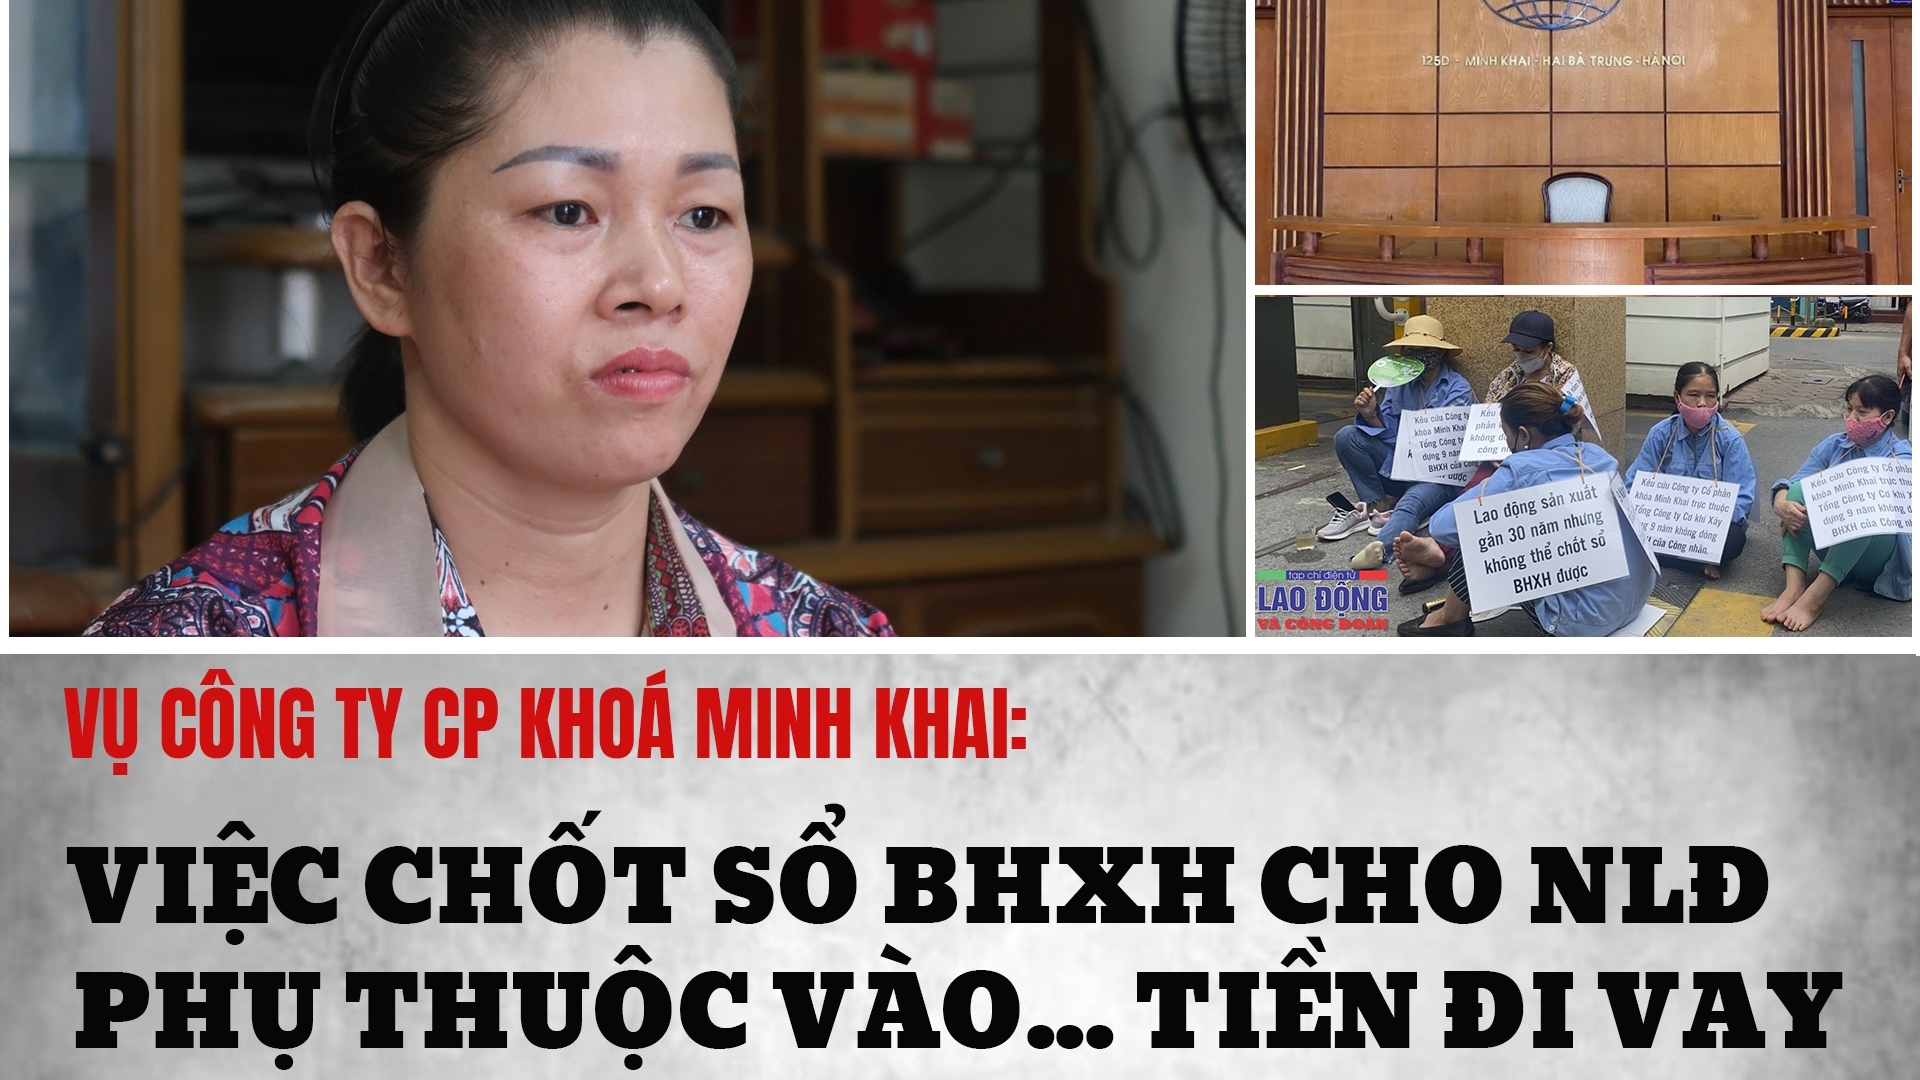 Vụ Công ty Khoá Minh Khai: Việc chốt sổ BHXH cho NLĐ phụ thuộc vào... tiền đi vay